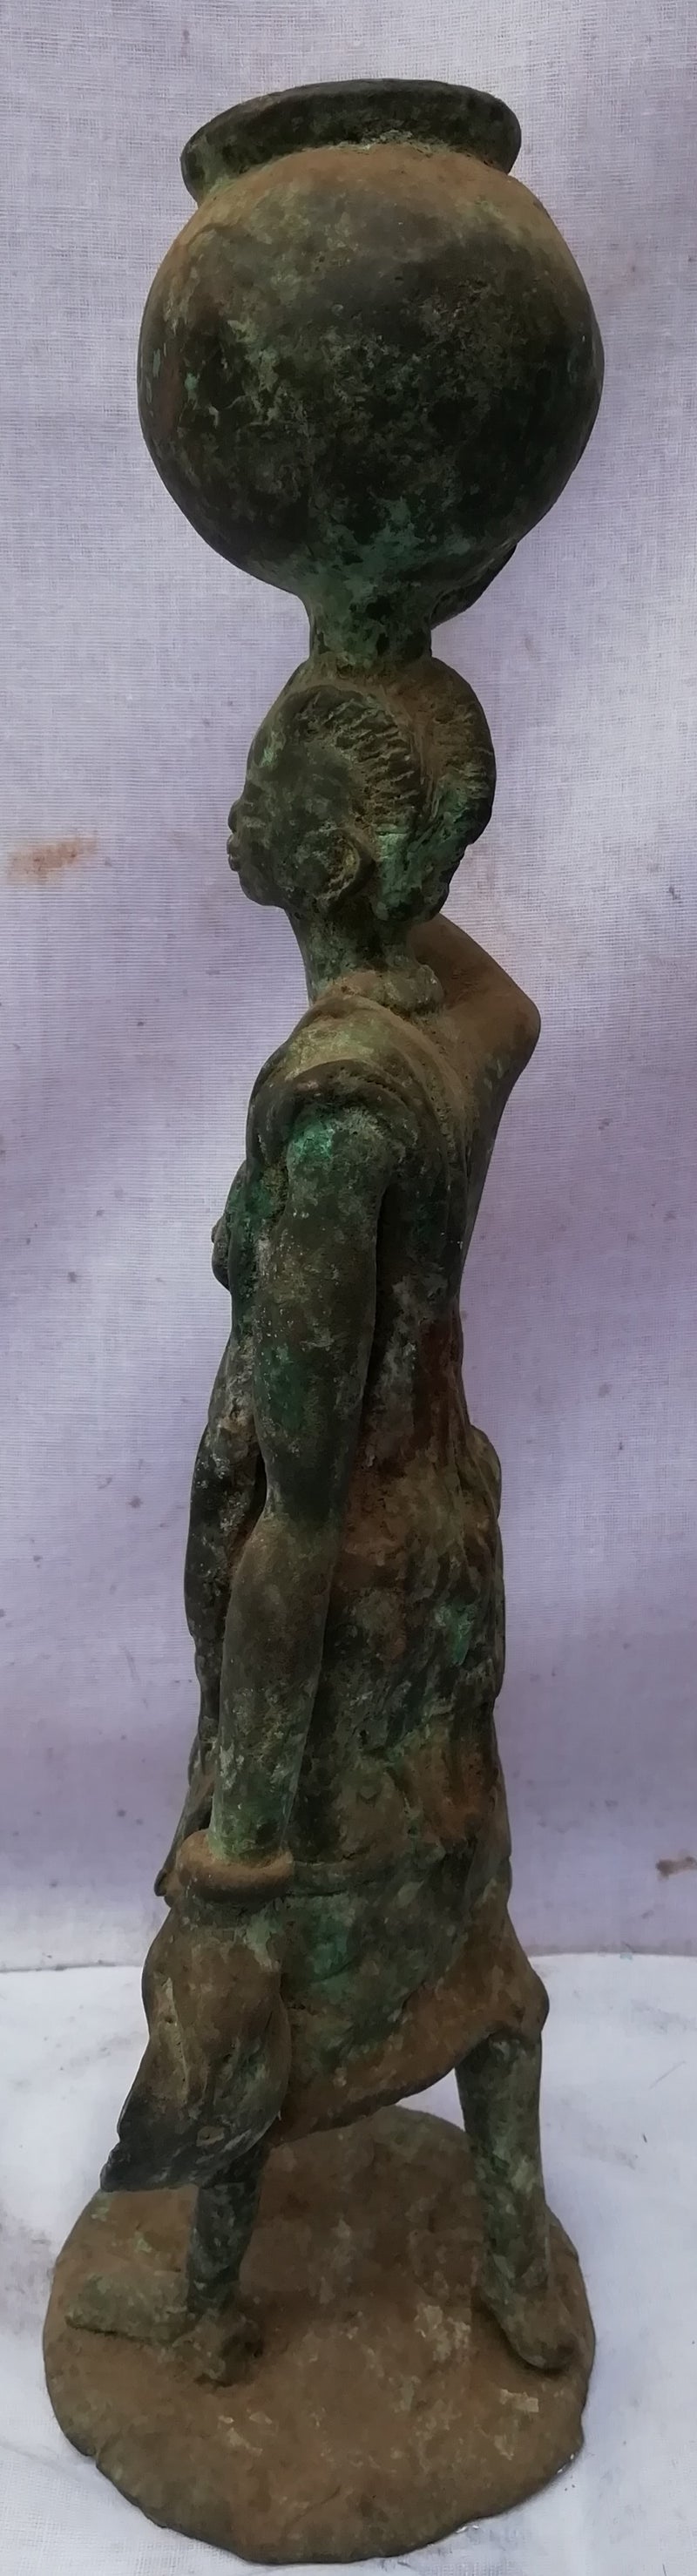 Statuette en bronze - Porteuse d'eau